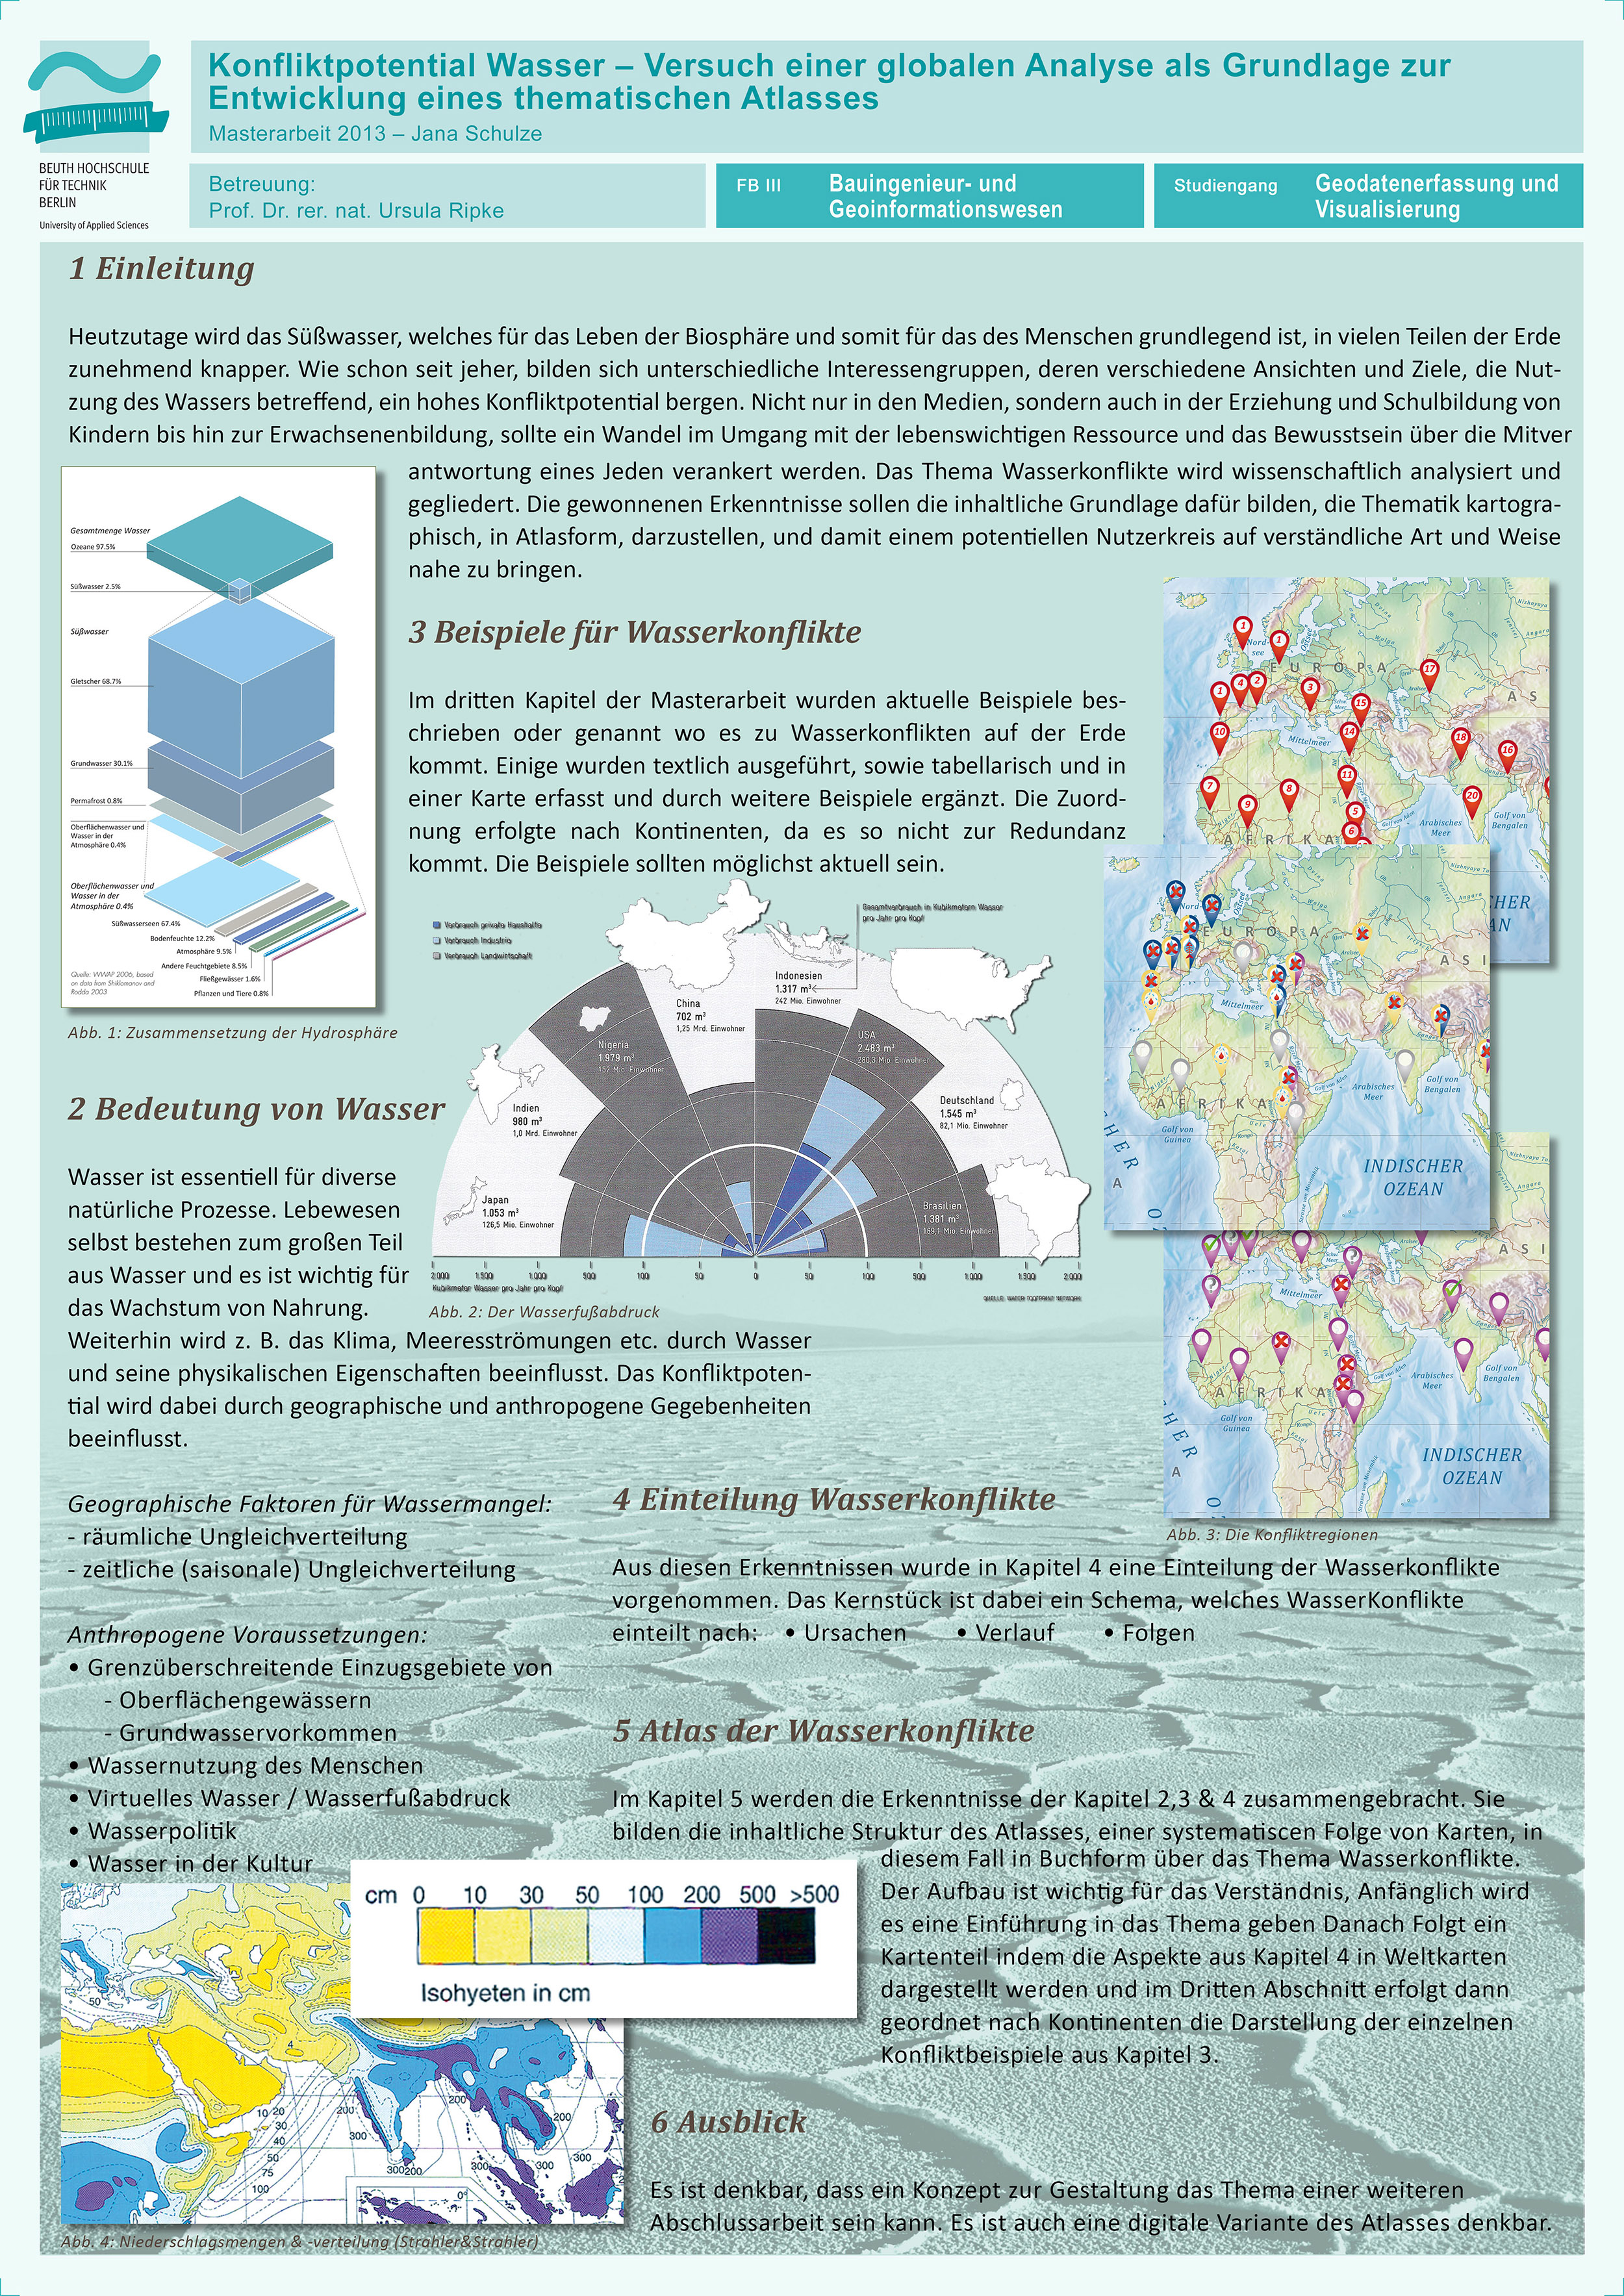 Poster: Konfliktpotential Wasser – Versuch einer globalen Analyse als Grundlage zur Entwicklung eines thematischen Atlasses